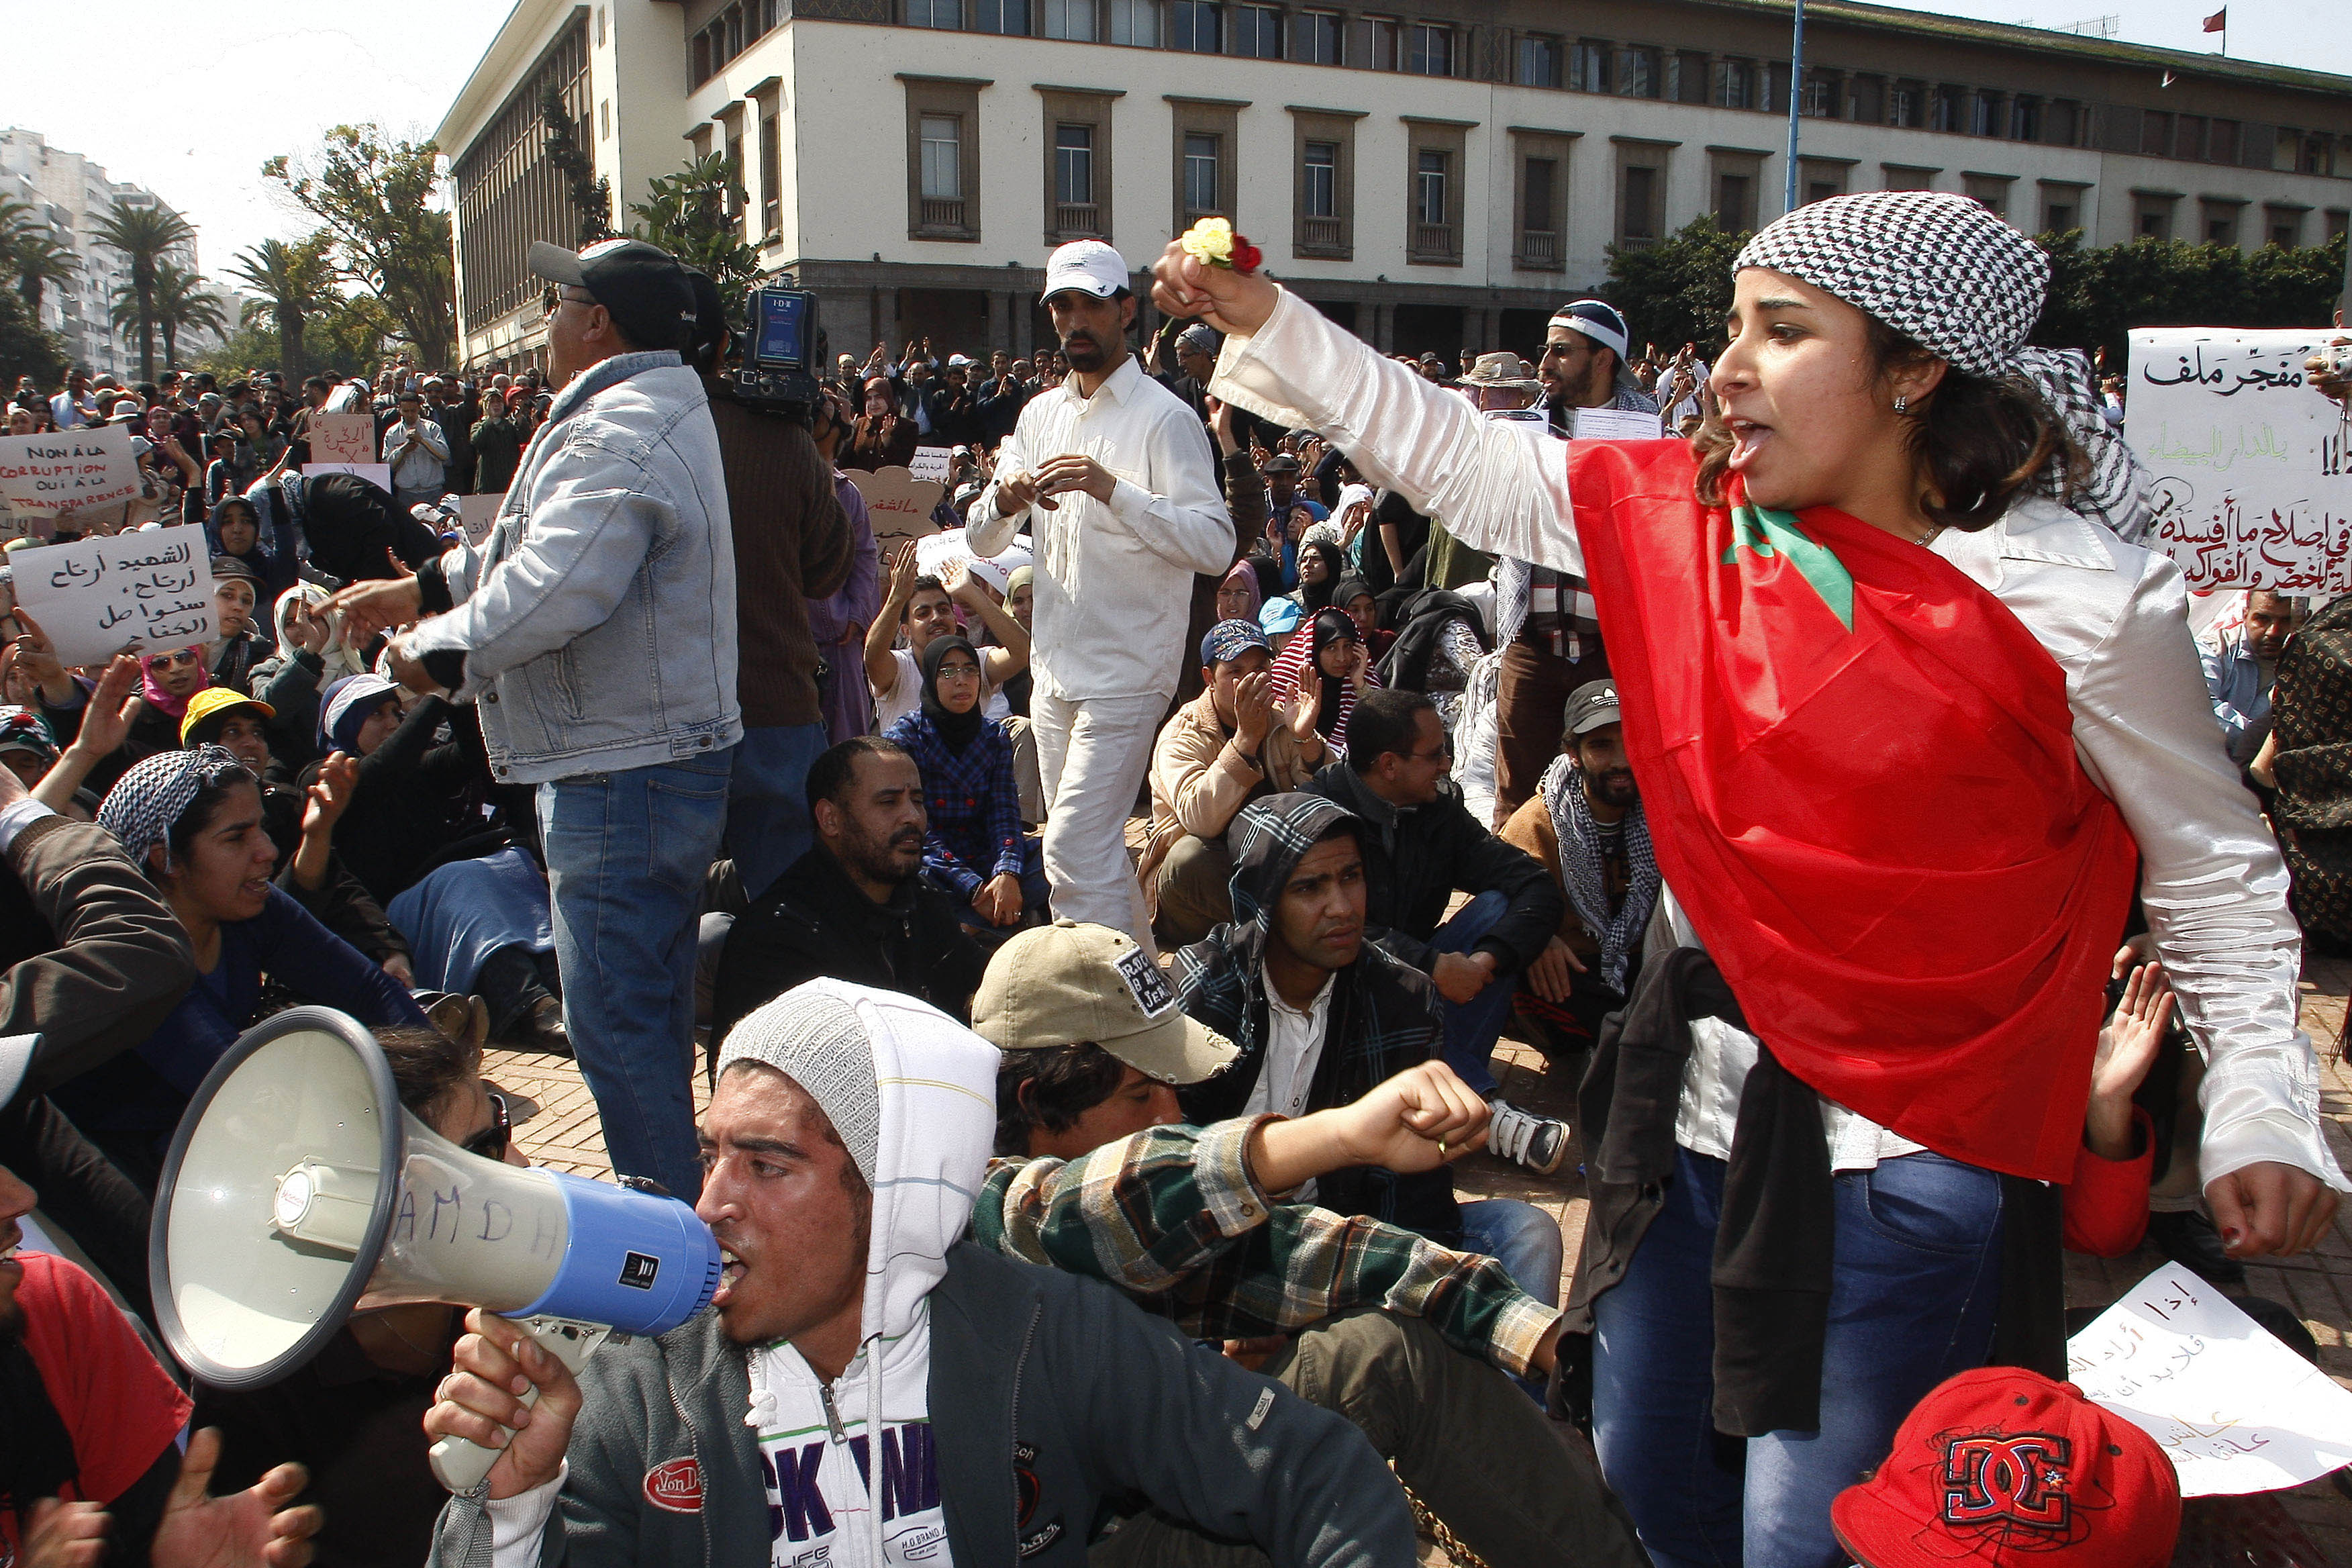 Protester, Uppror, Marocko, Svenska kungahuset, Revolution, Demonstration